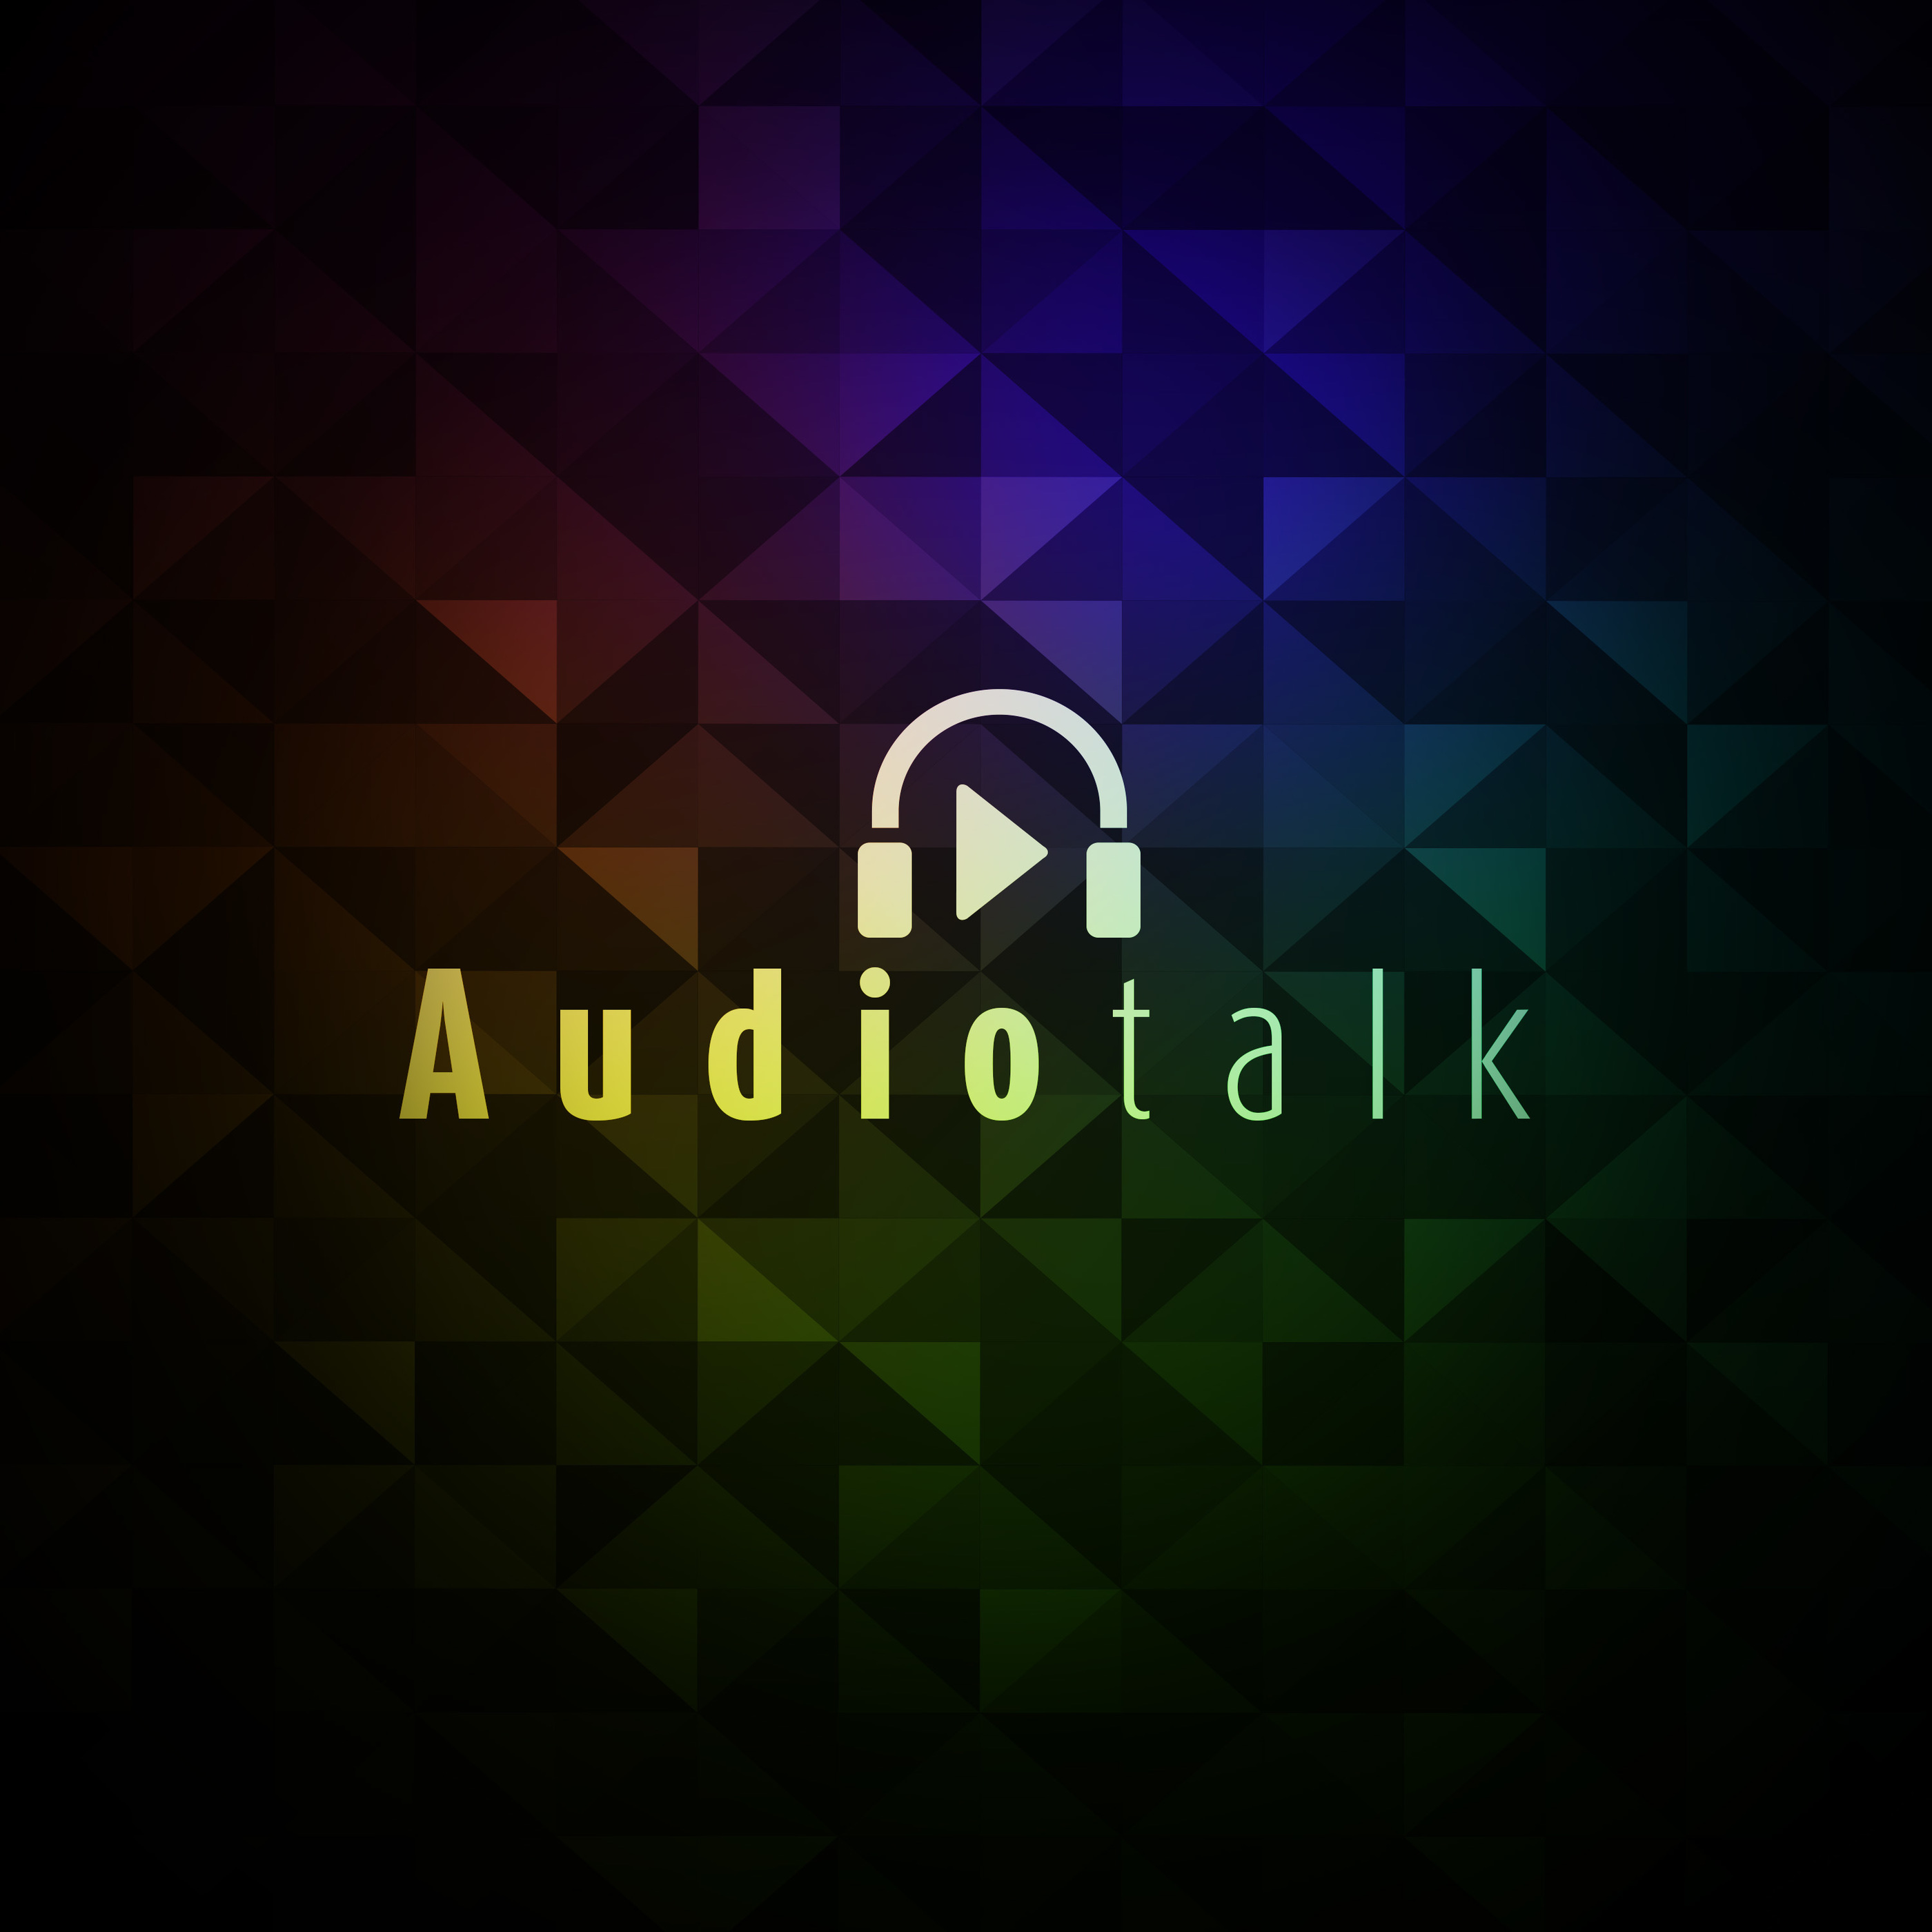 Audiotalk